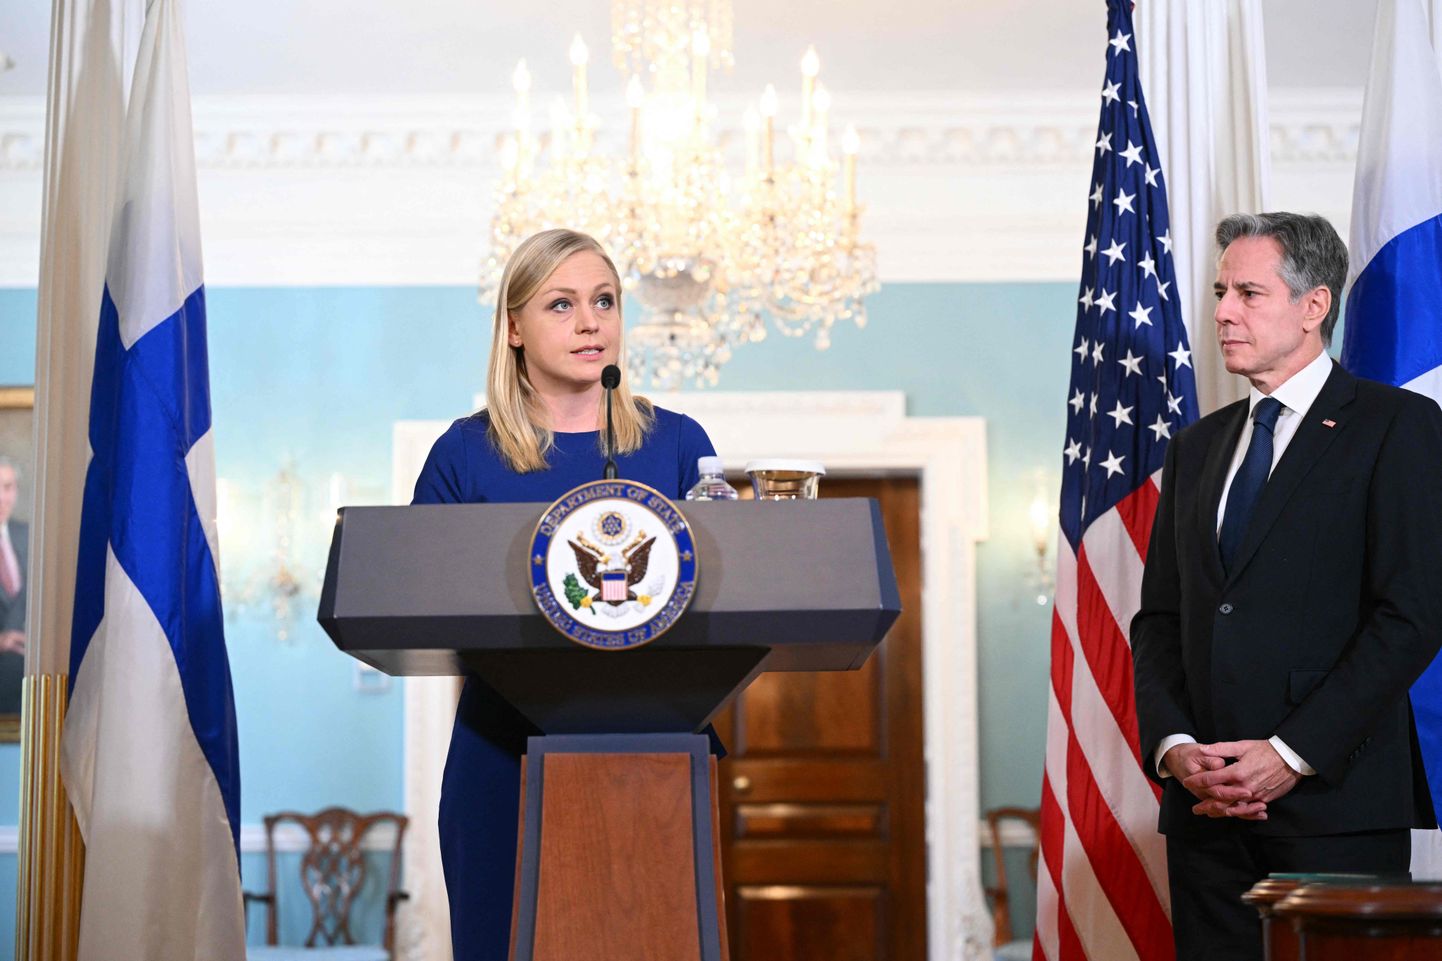 Soome välisminister Elina Valtonen esinemas USA välisministeeriumis. Foto on illustratiivne.